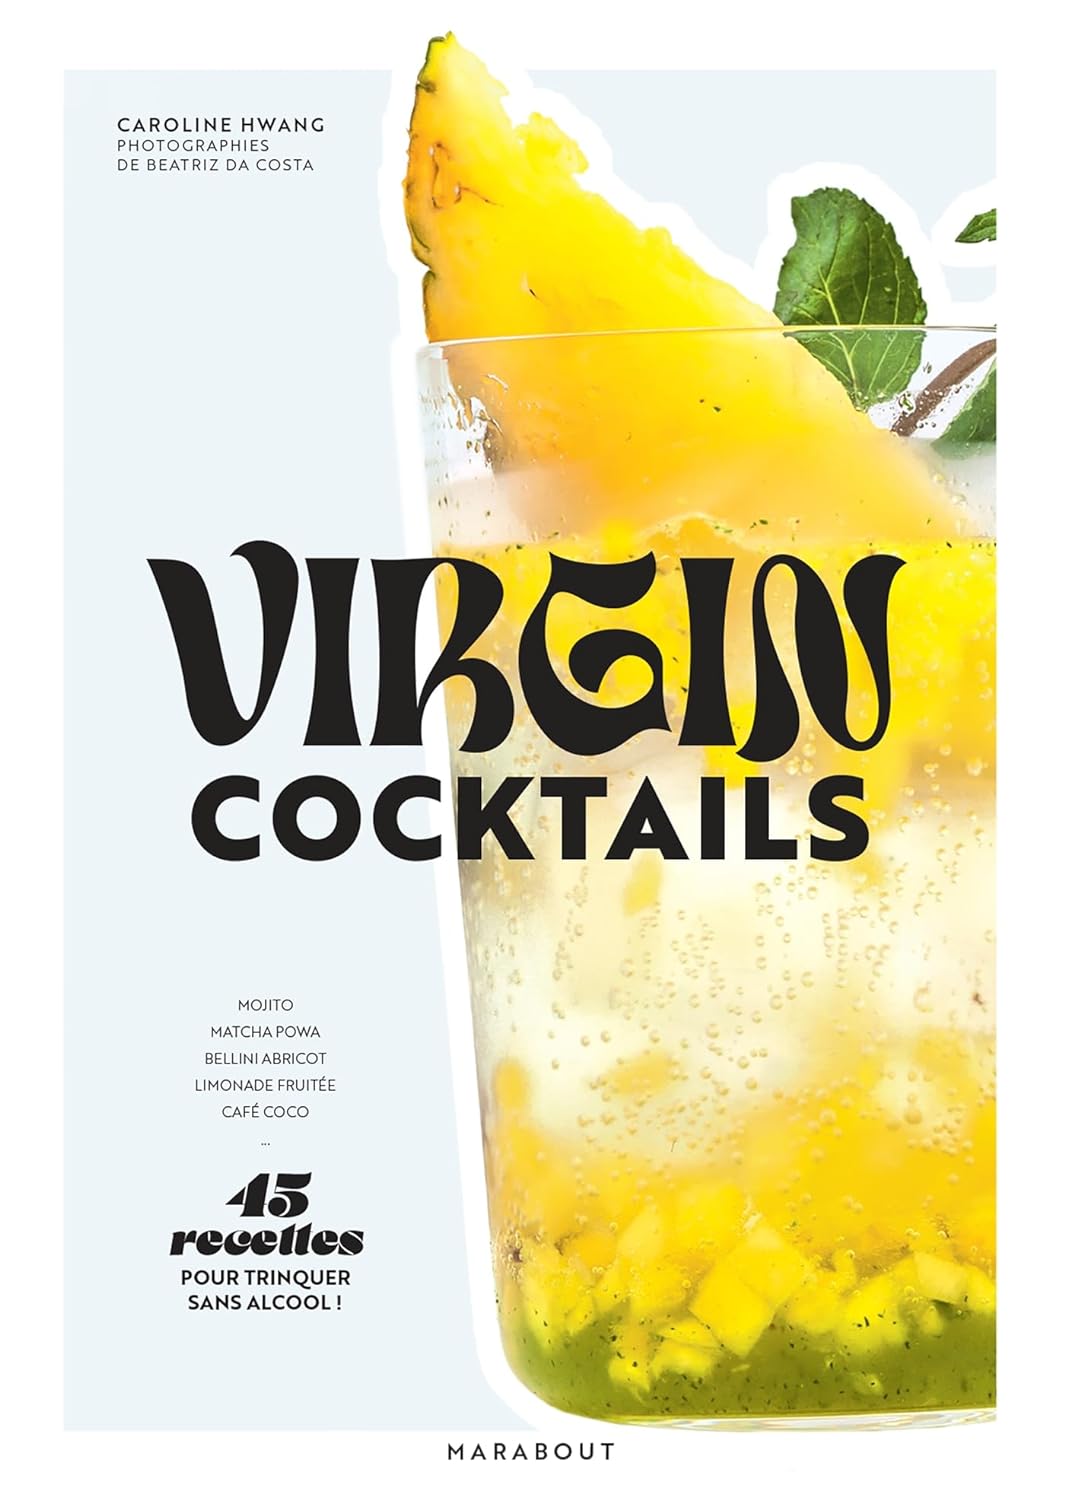 Virgin cocktails    - Hachette Ed. - Livre d'alcool et boisson - 